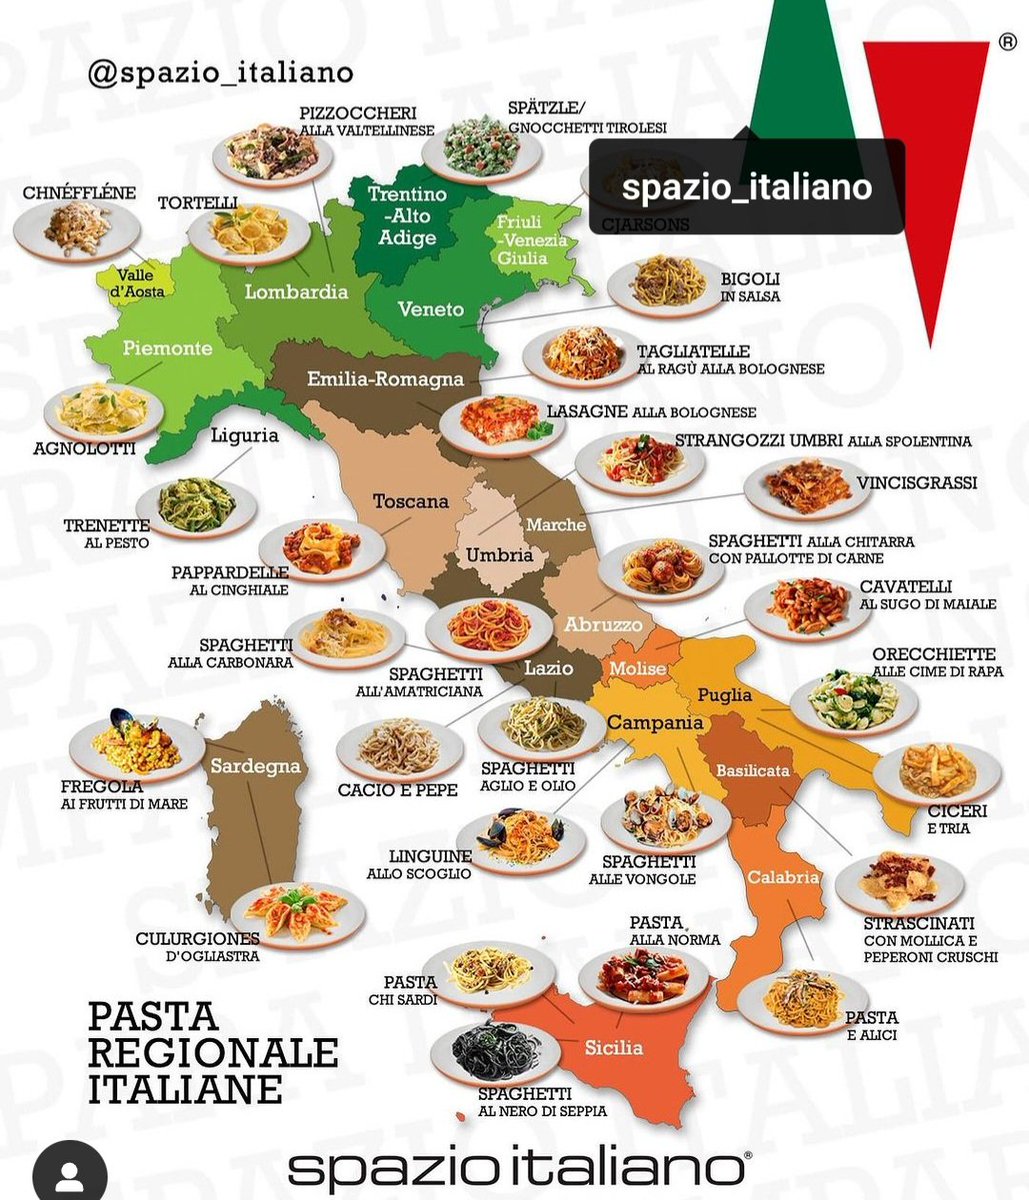 İtalya'da bölgelere göre yenecek makarna cesitleriymis ama bazısı yanlış, mesela Abruzzo'da öyle büyük köfteli spagetti yapılmıyor tam olarak, fotoğraftakilerden çok daha küçük misket köfteli Abruzzo usulü et suyu ile yapılır benim bildiğim...